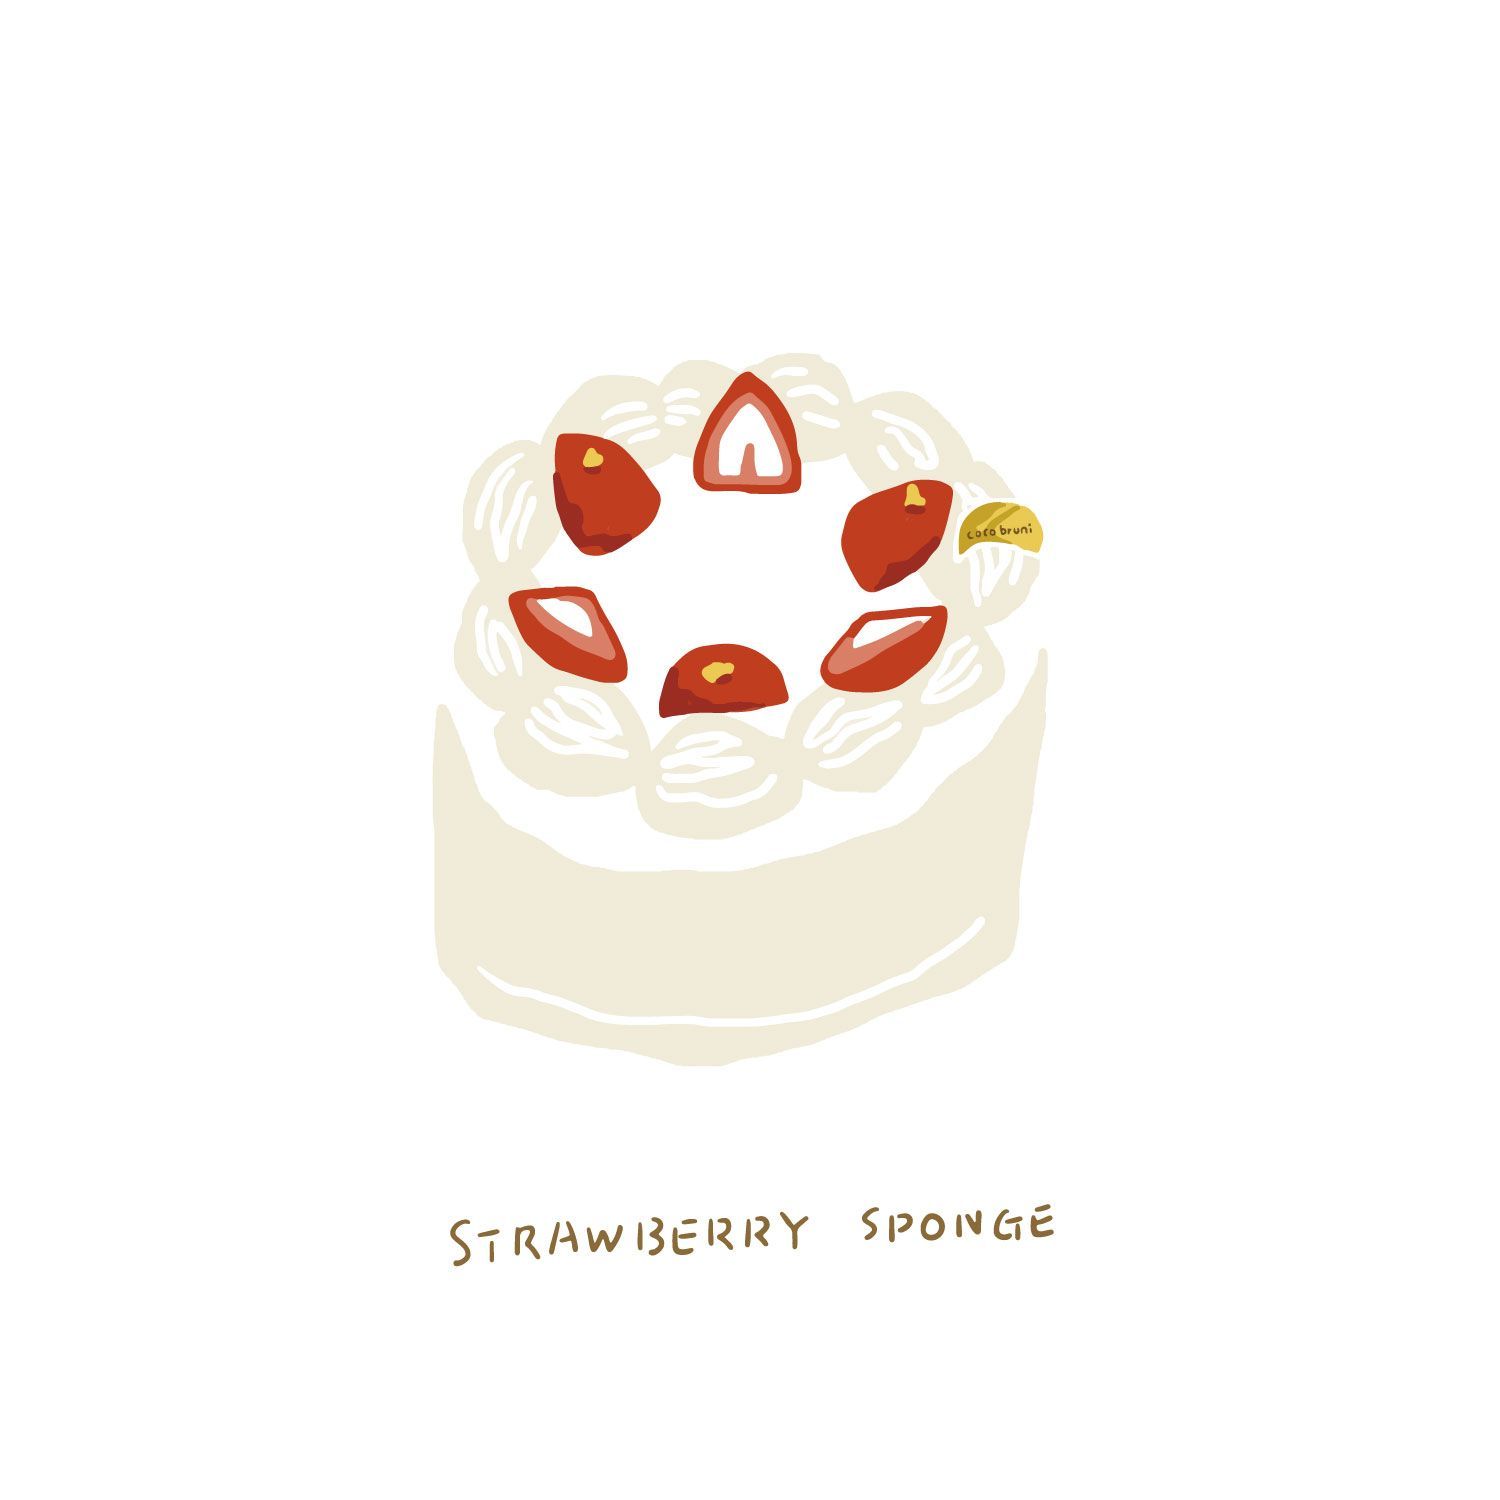 Strawberry cake -   6 strawberry cake Illustration ideas